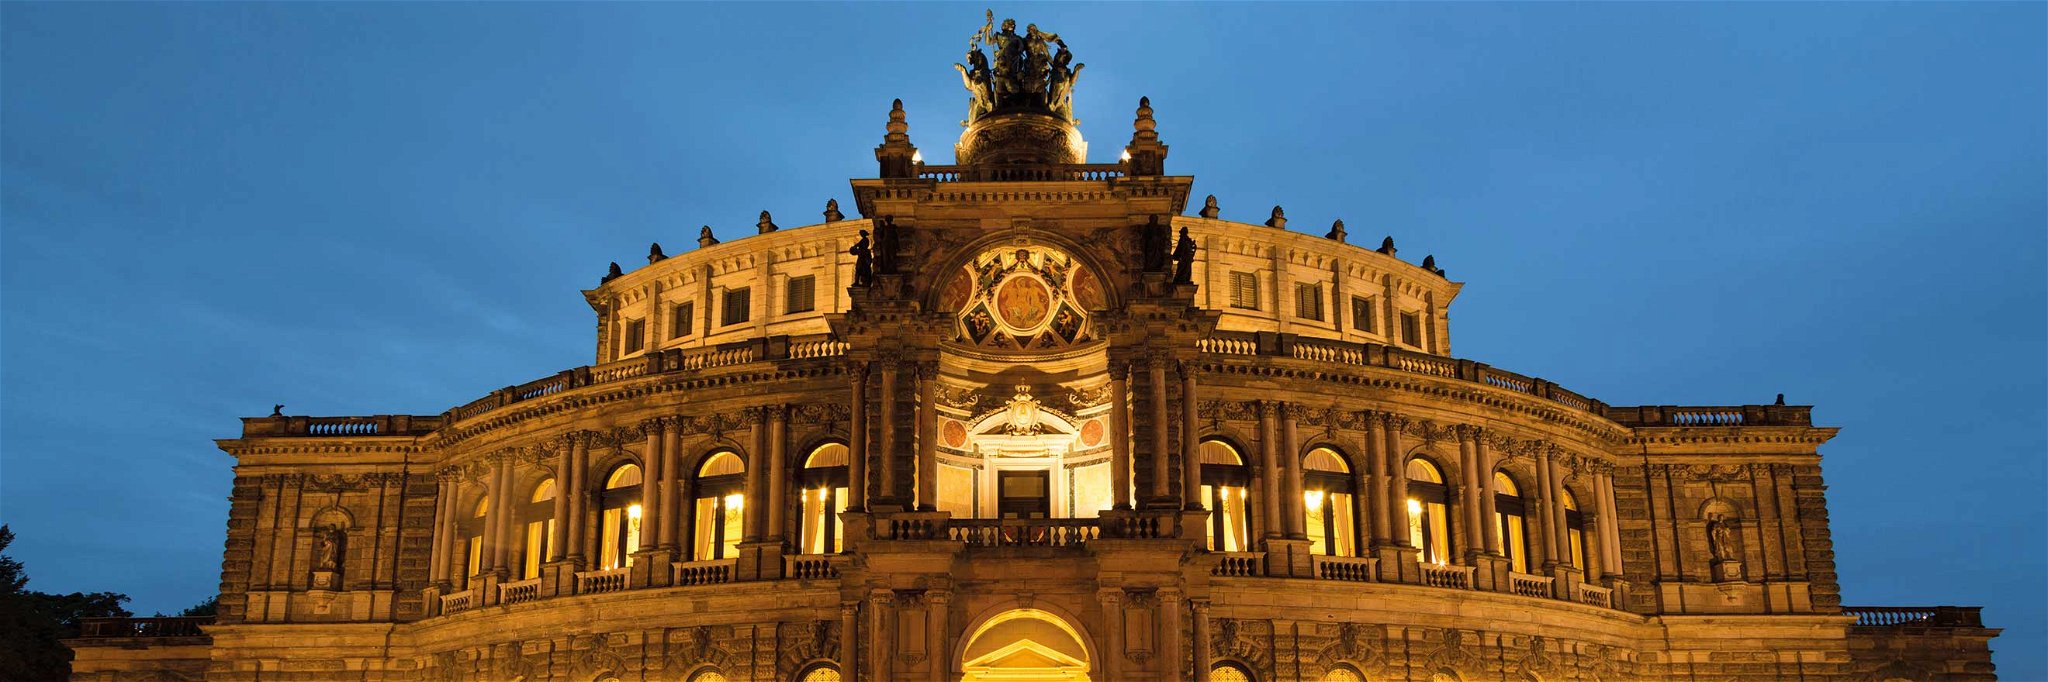 Die Dresdner Semperoper ist eine architektonische Perle.